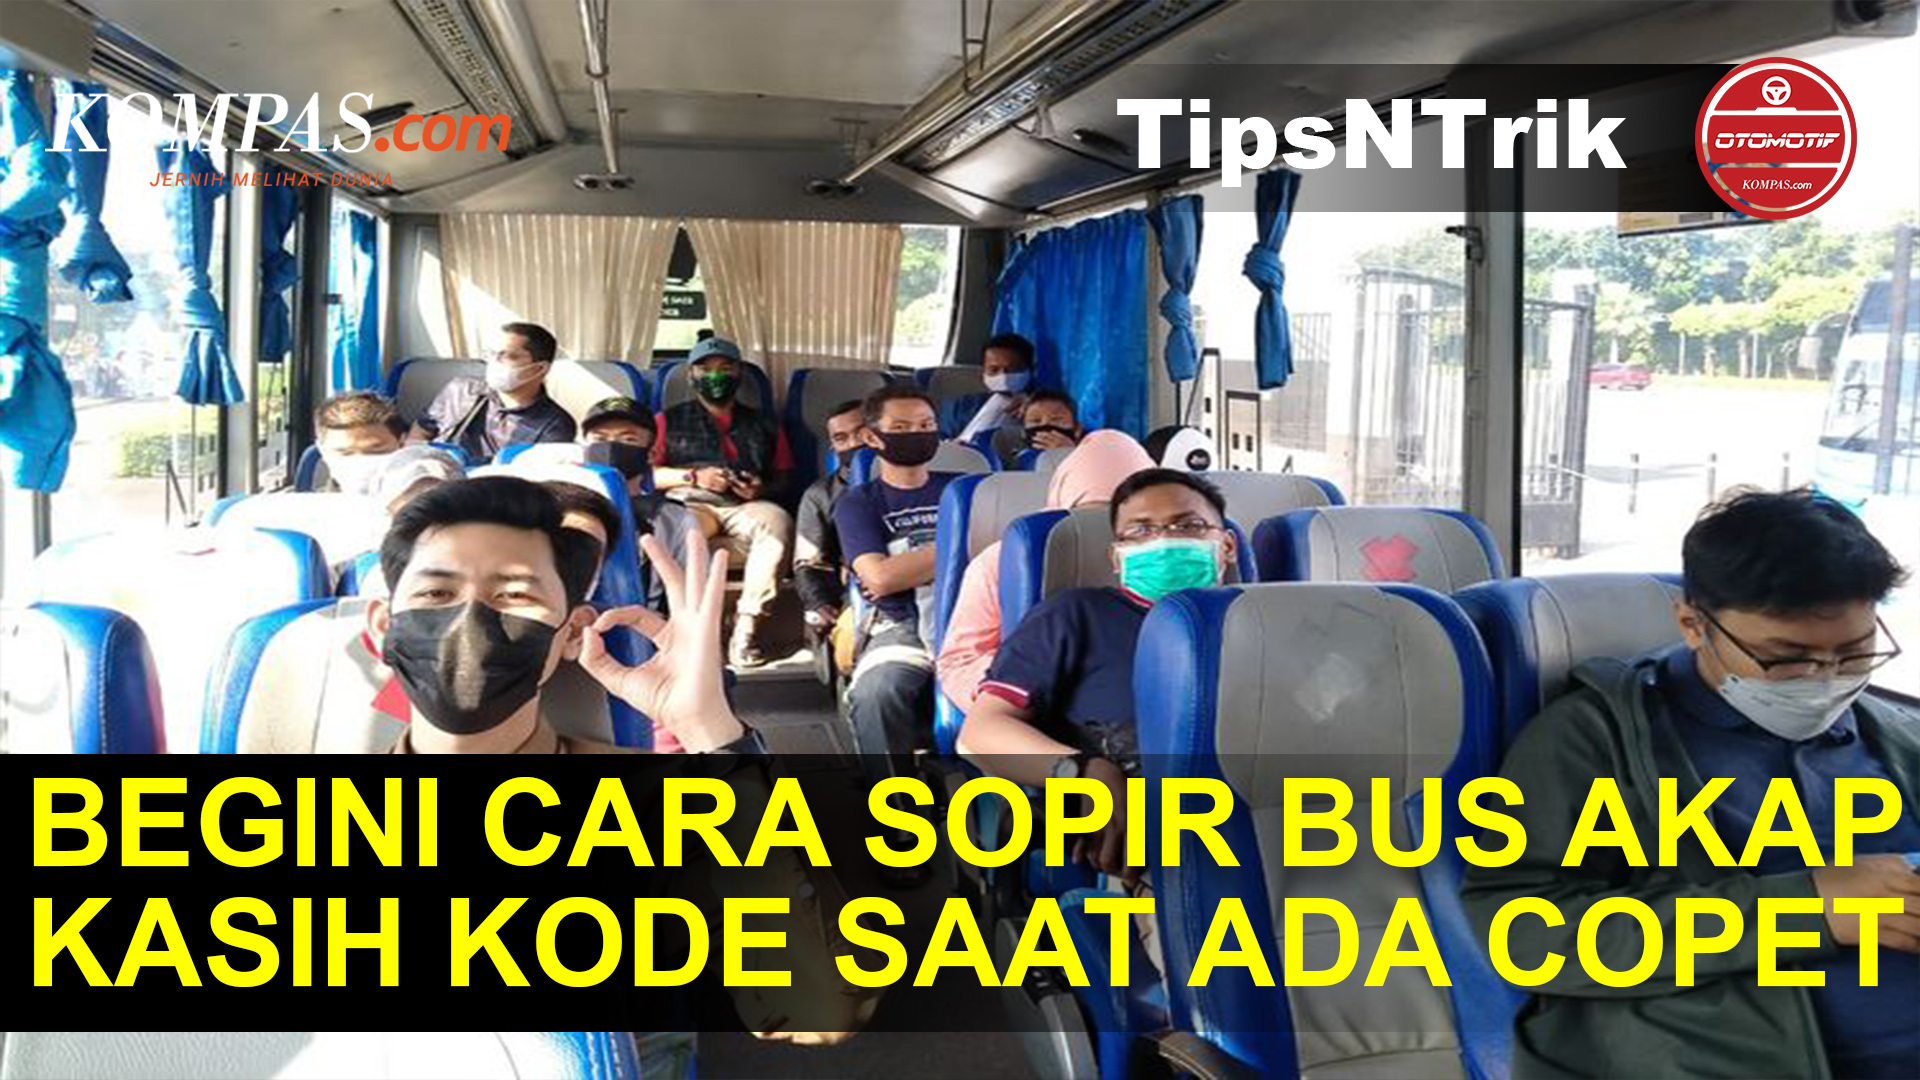 #TipsNTrik : Pahami Kode dari Sopir Saat Naik Bus, Artinya Awas Ada Copet